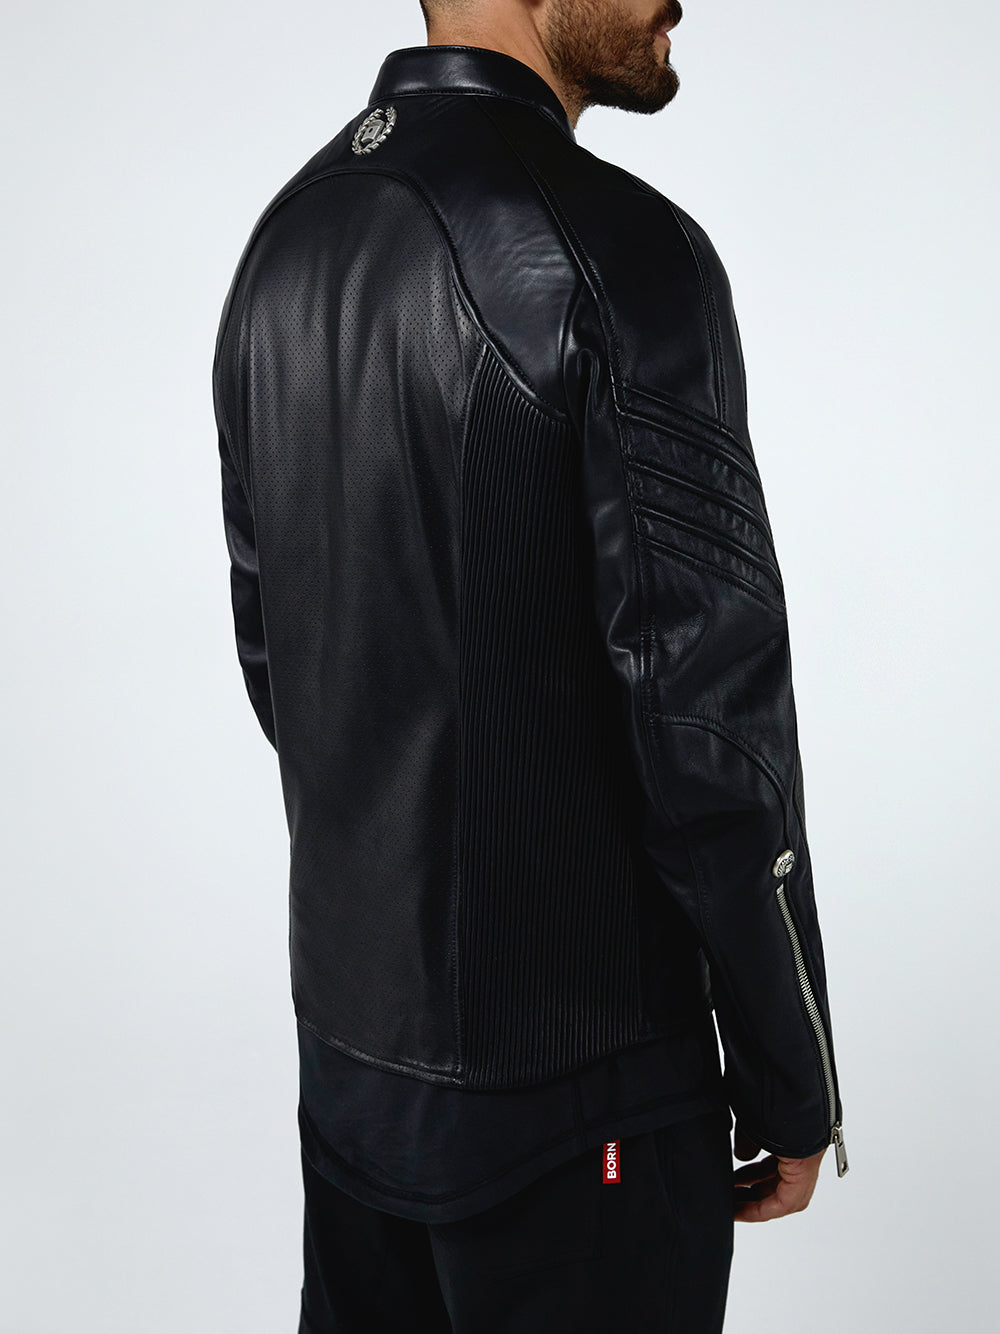 BORGO Mugello Nero Leather Jacket